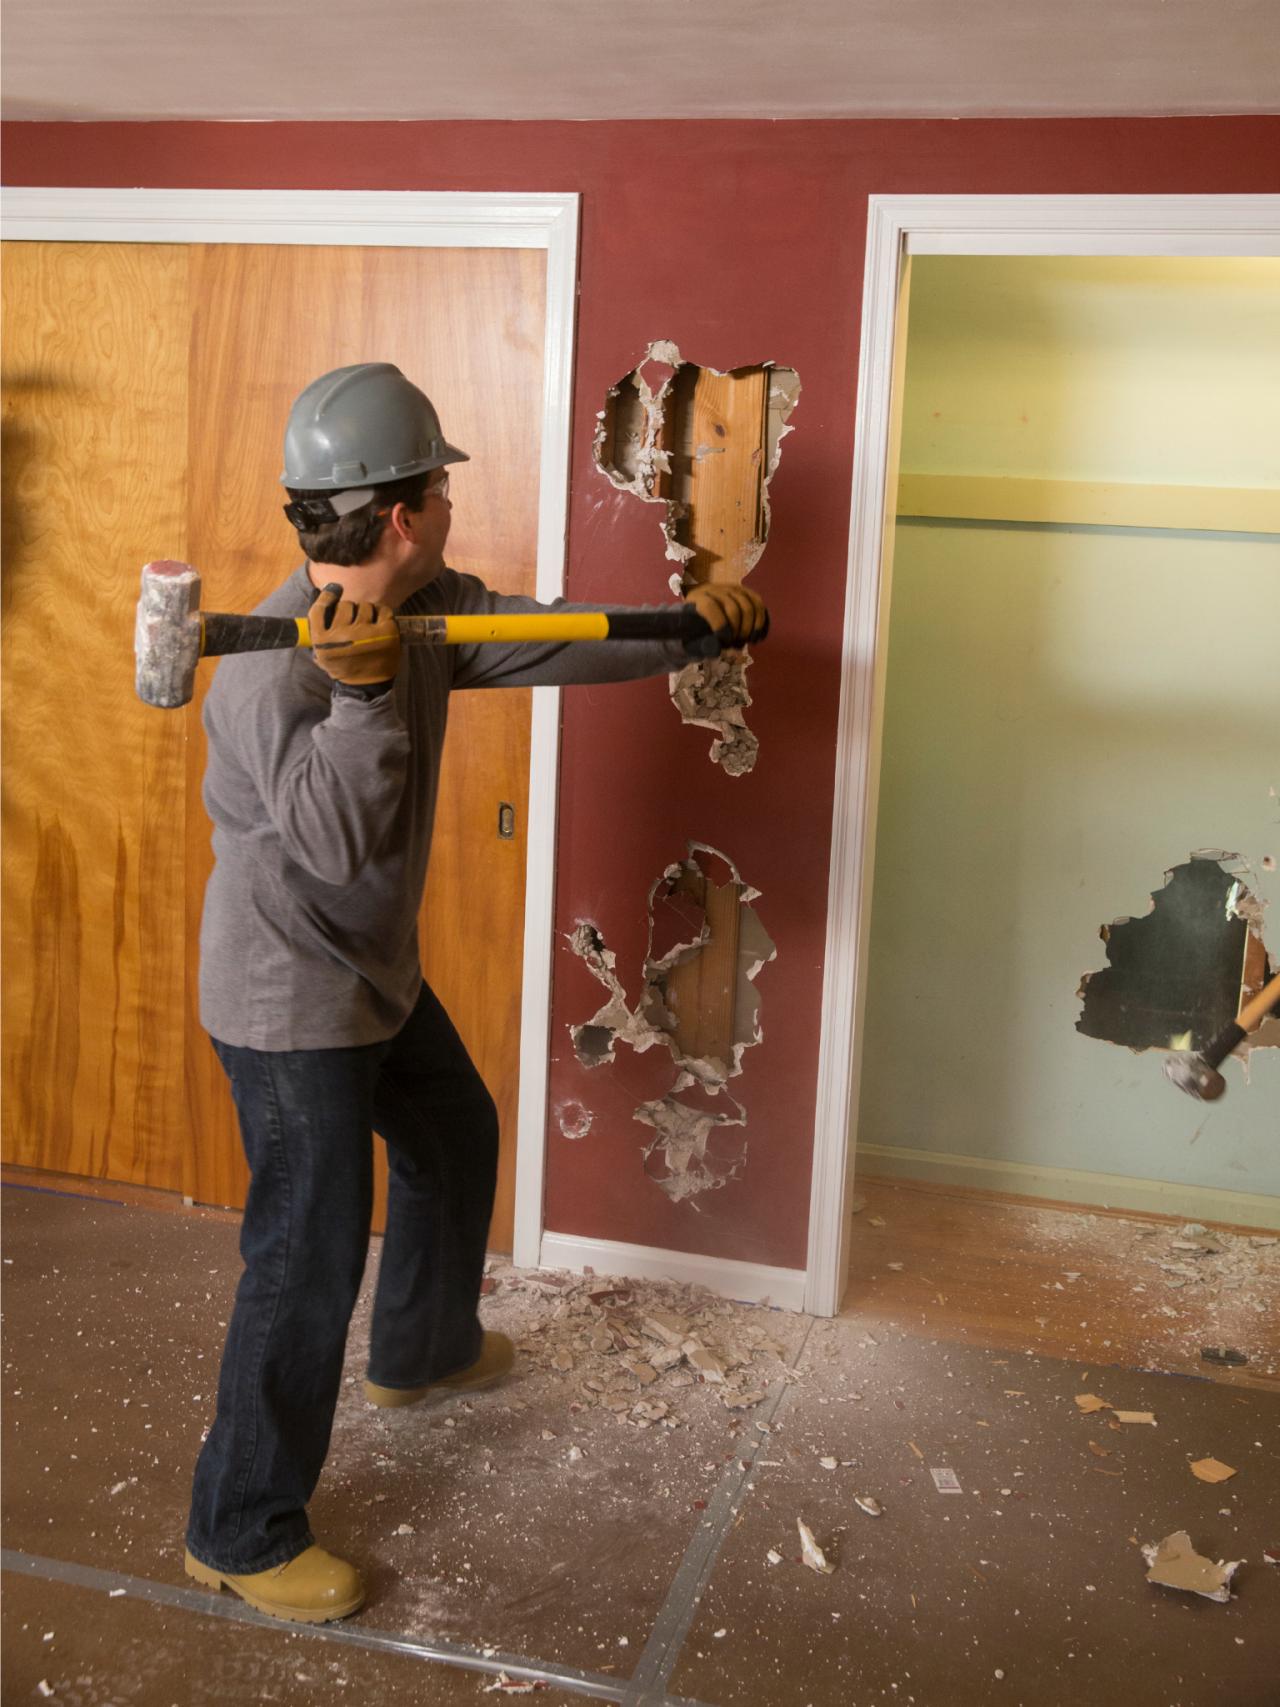 BP_DSLH105H_Sledgehammer-smashing-wall-bedroom-during_v.jpg.rend.hgtvcom.1280.1707.jpeg